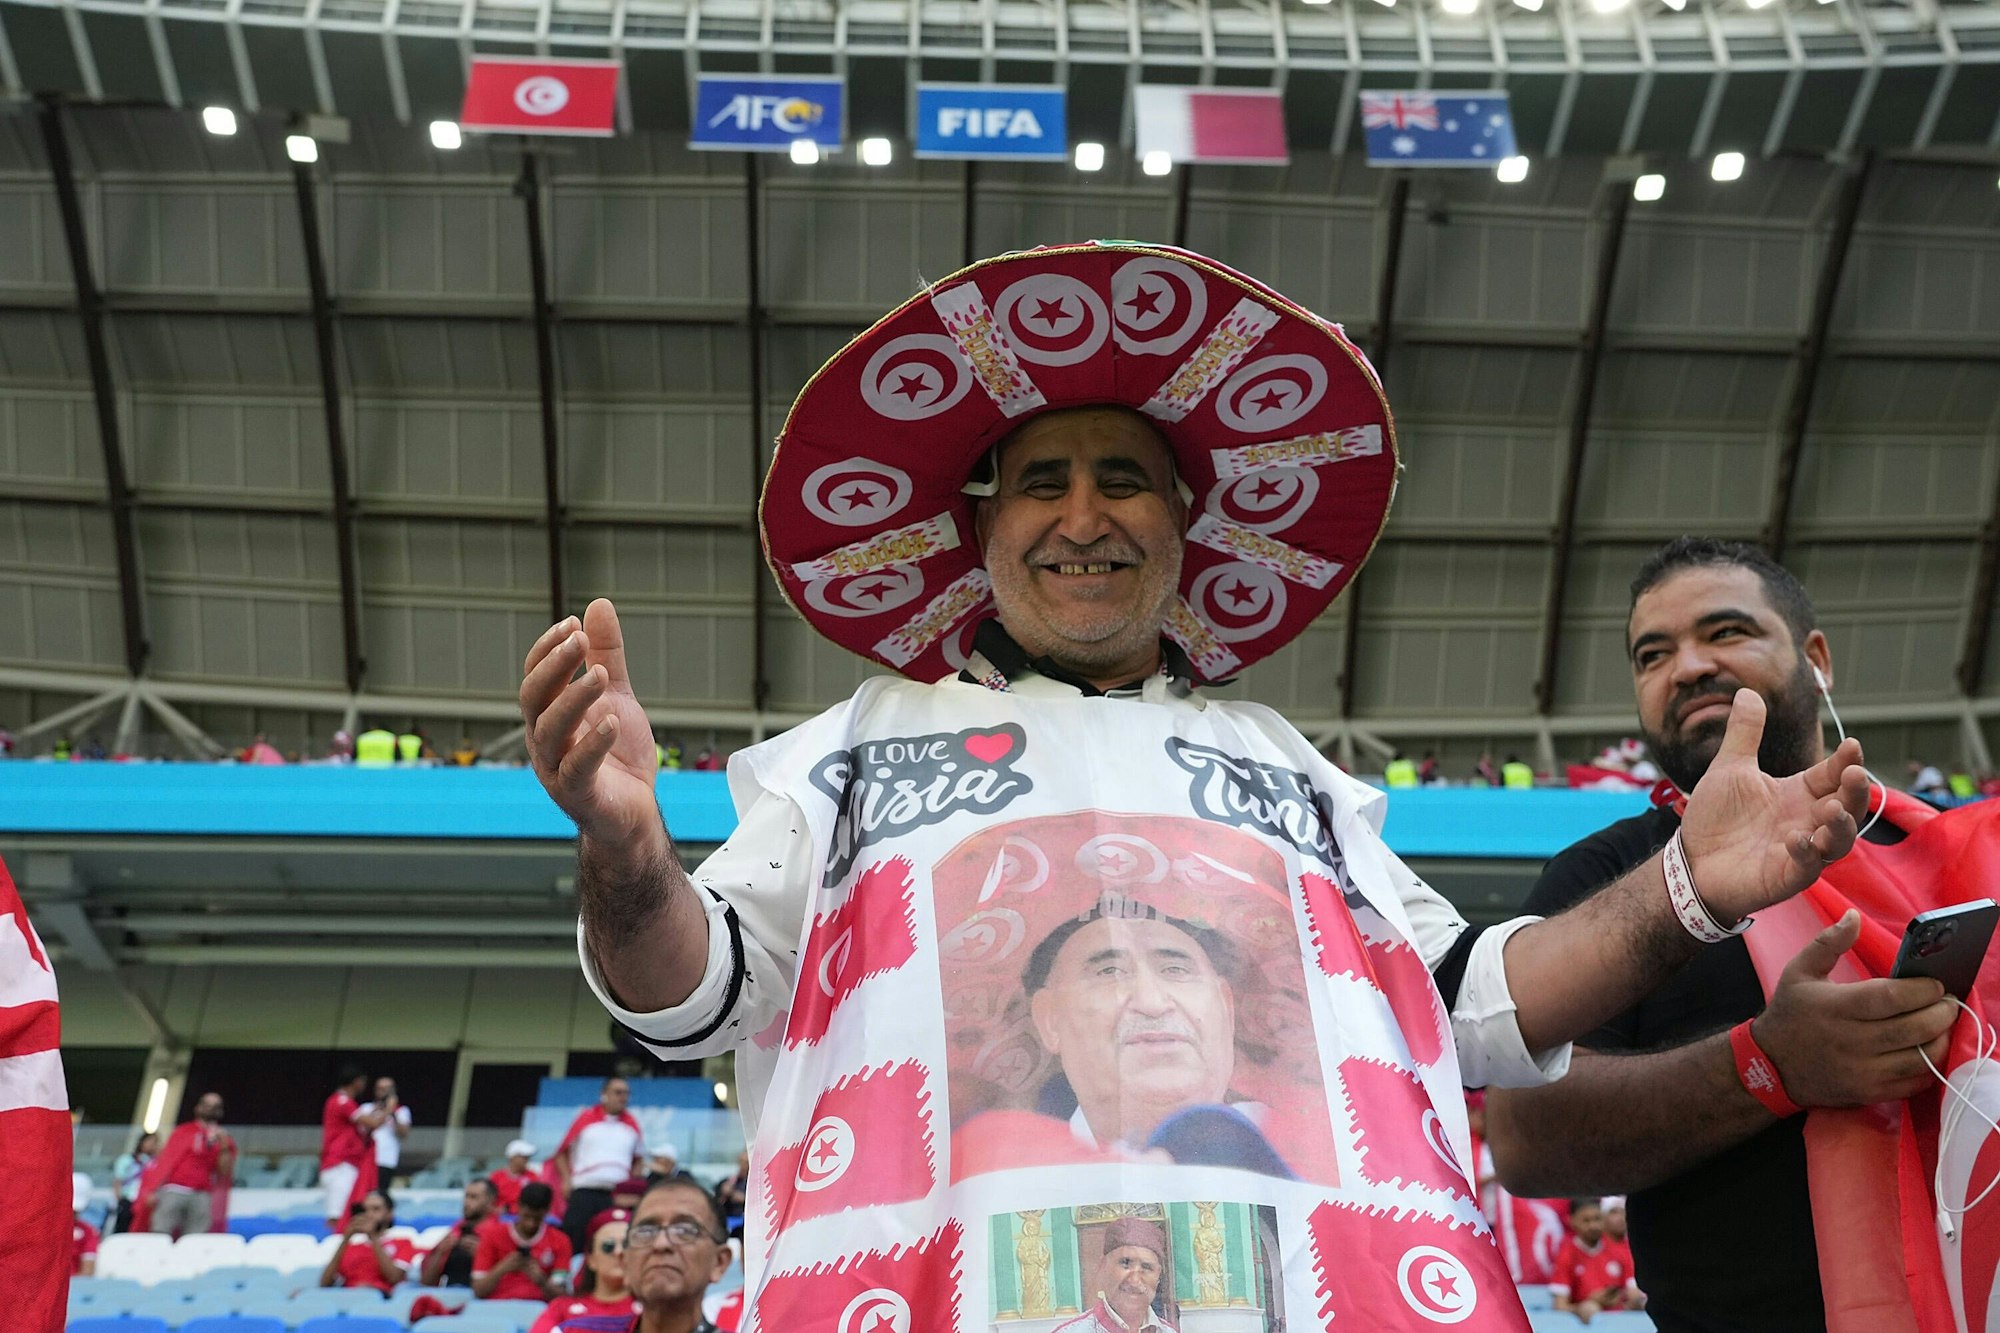 Ein tunesischer Fan mit Sombrero und einem Gewand zeigt sich lächelnd auf der Tribüne.